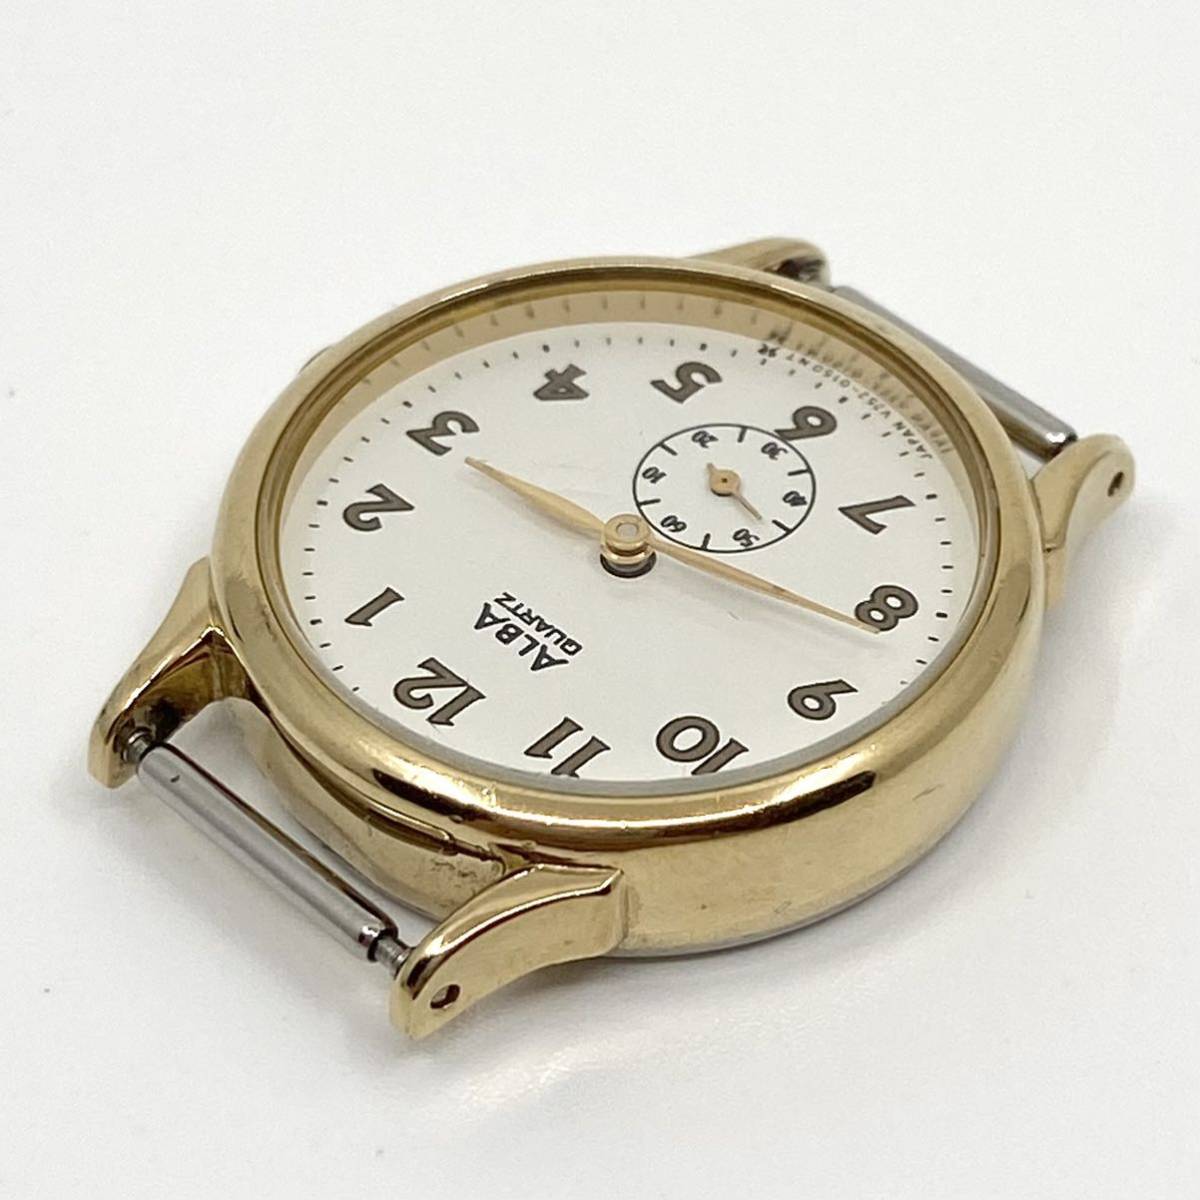 SEIKO ALBA スモールセコンド 腕時計 ホワイト ゴールド 白 金 セイコー アルバ D19_画像3